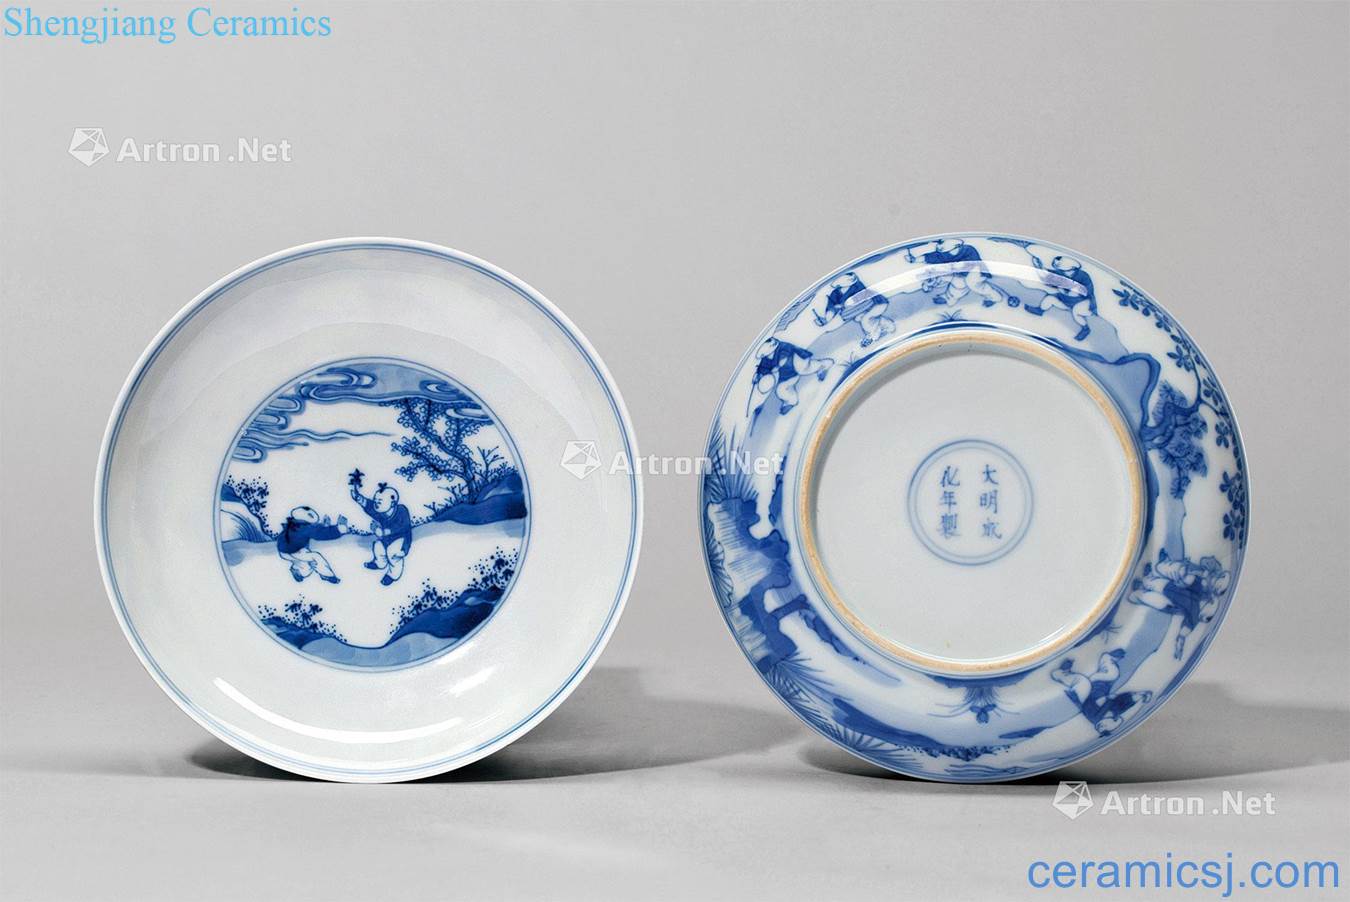 Qing yongzheng blue baby play figure plate (a)